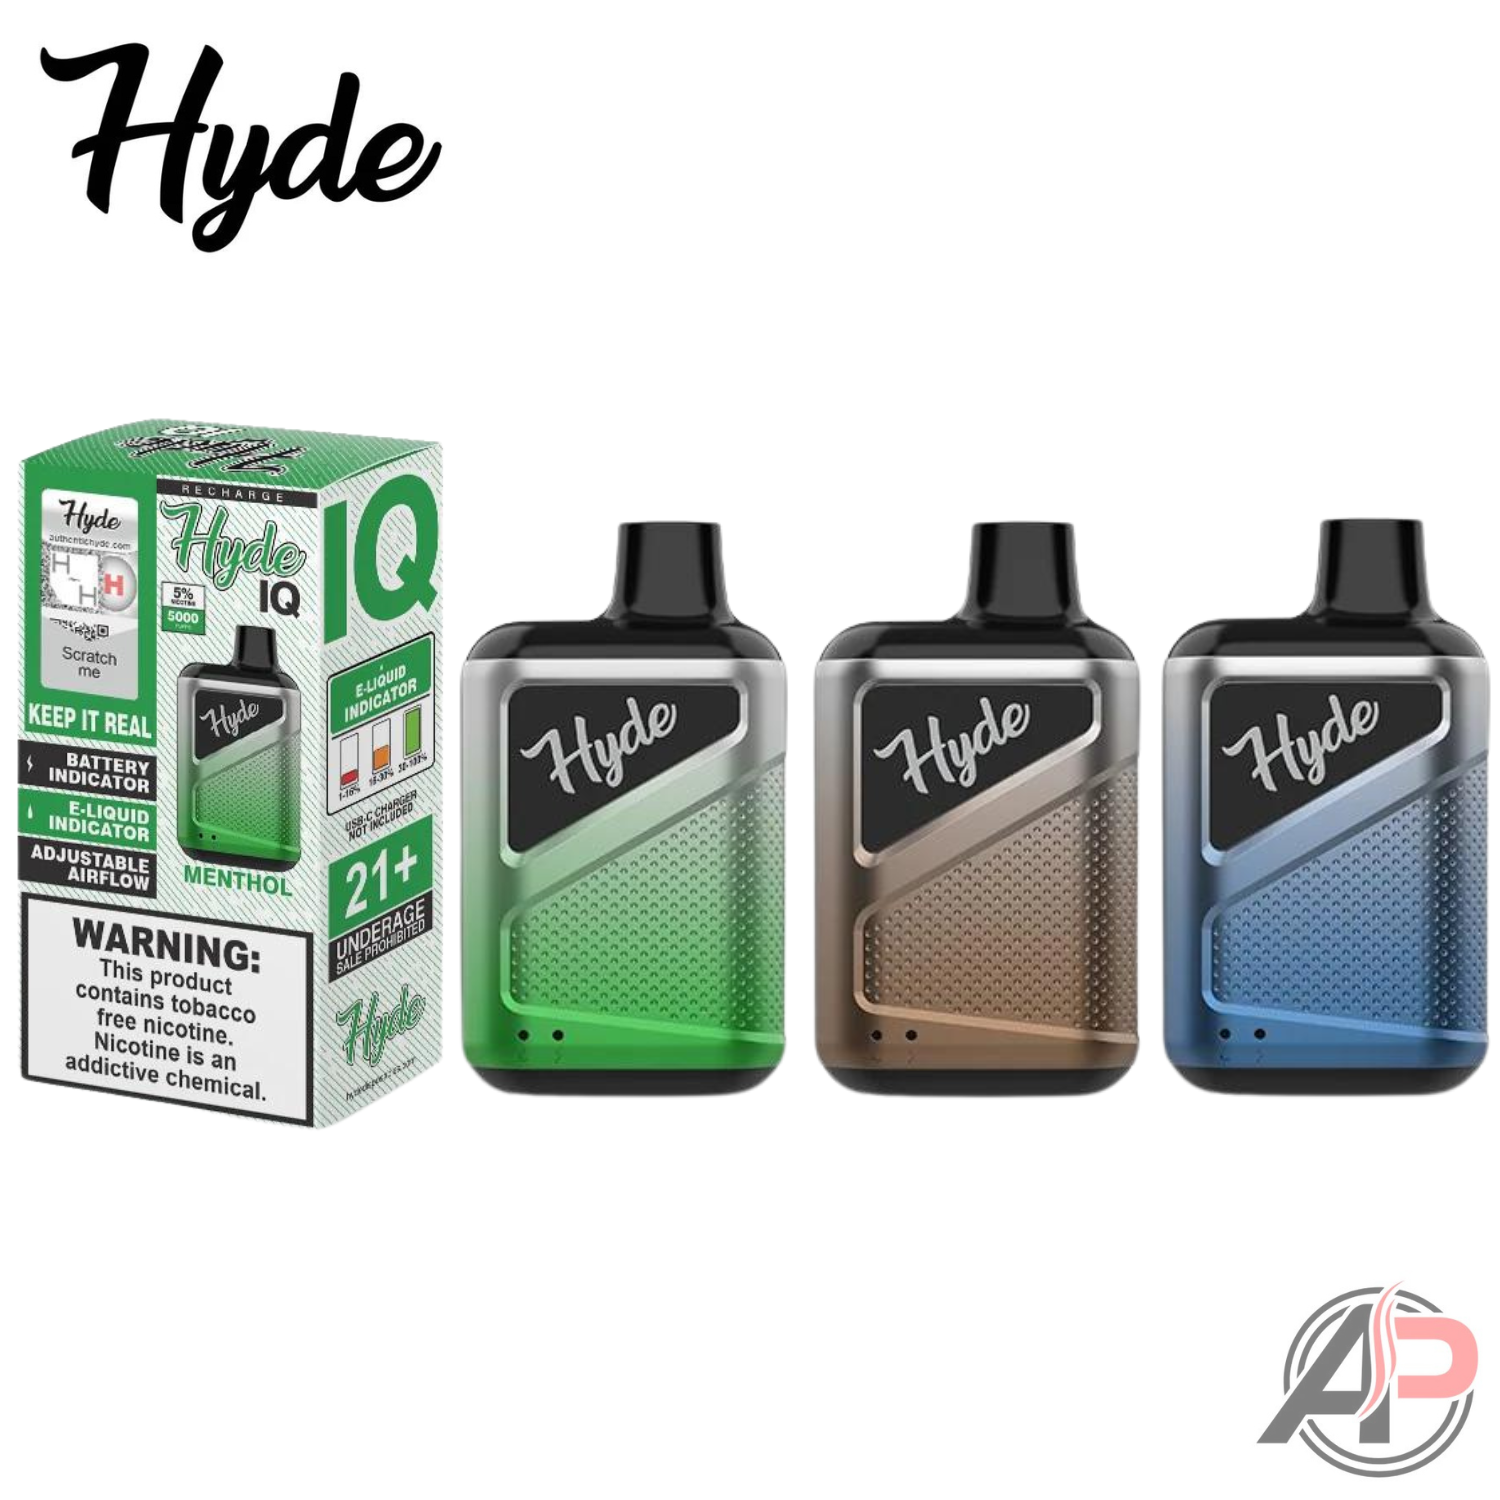 Hyde IQ Vape 5000 Puffs Disposable Vape Device